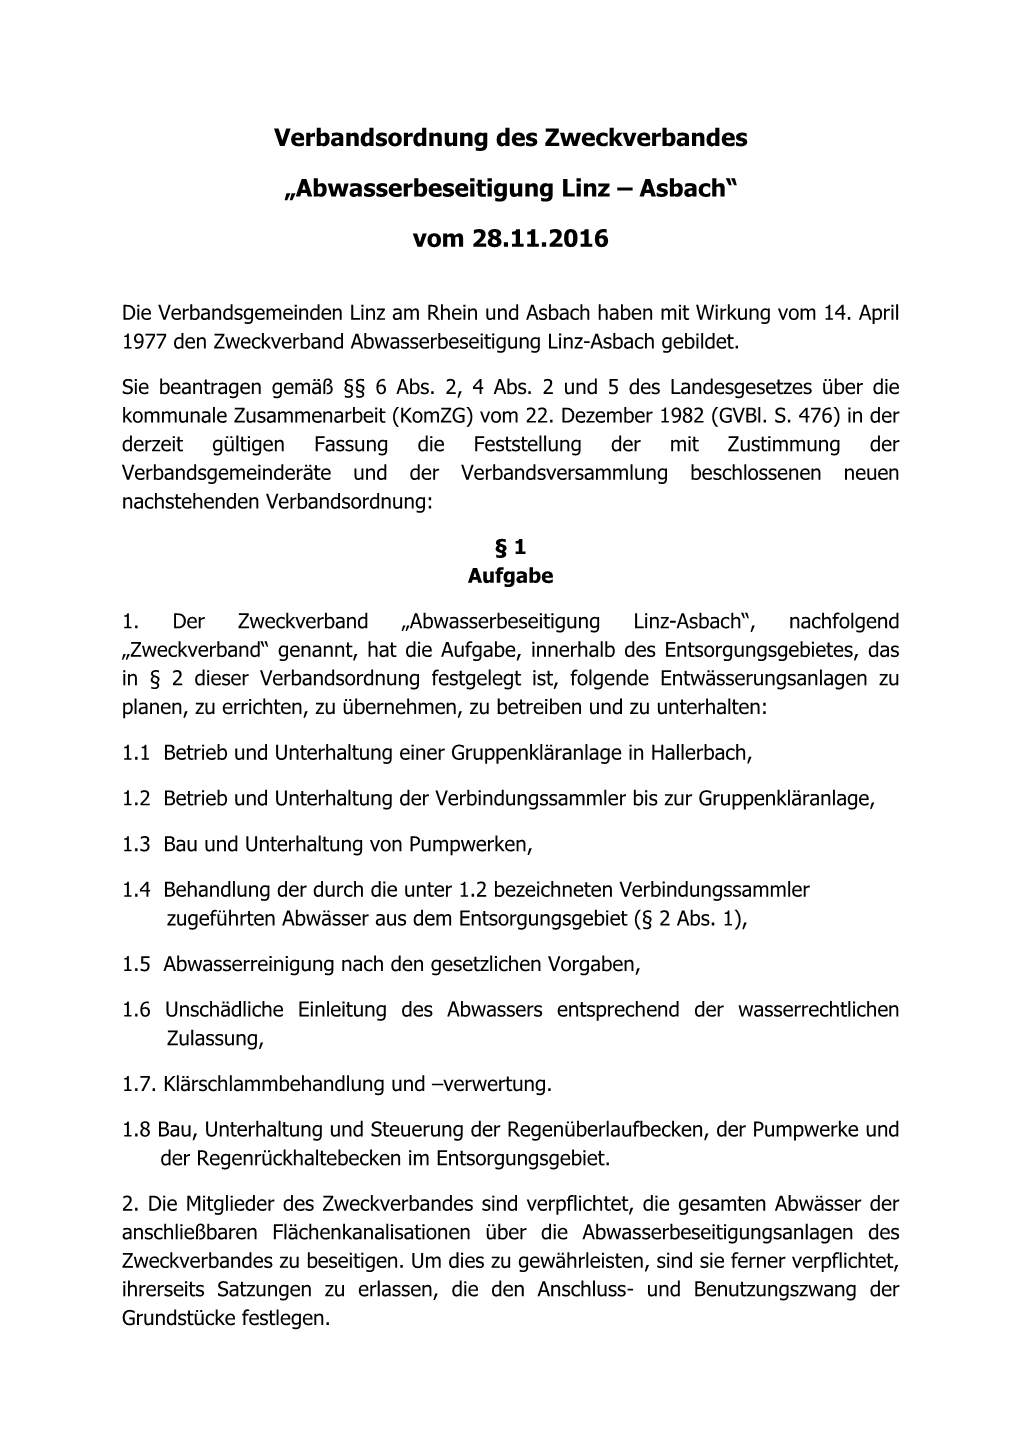 Verbandsordnung Des Zweckverbandes Linz-Asbach Vom